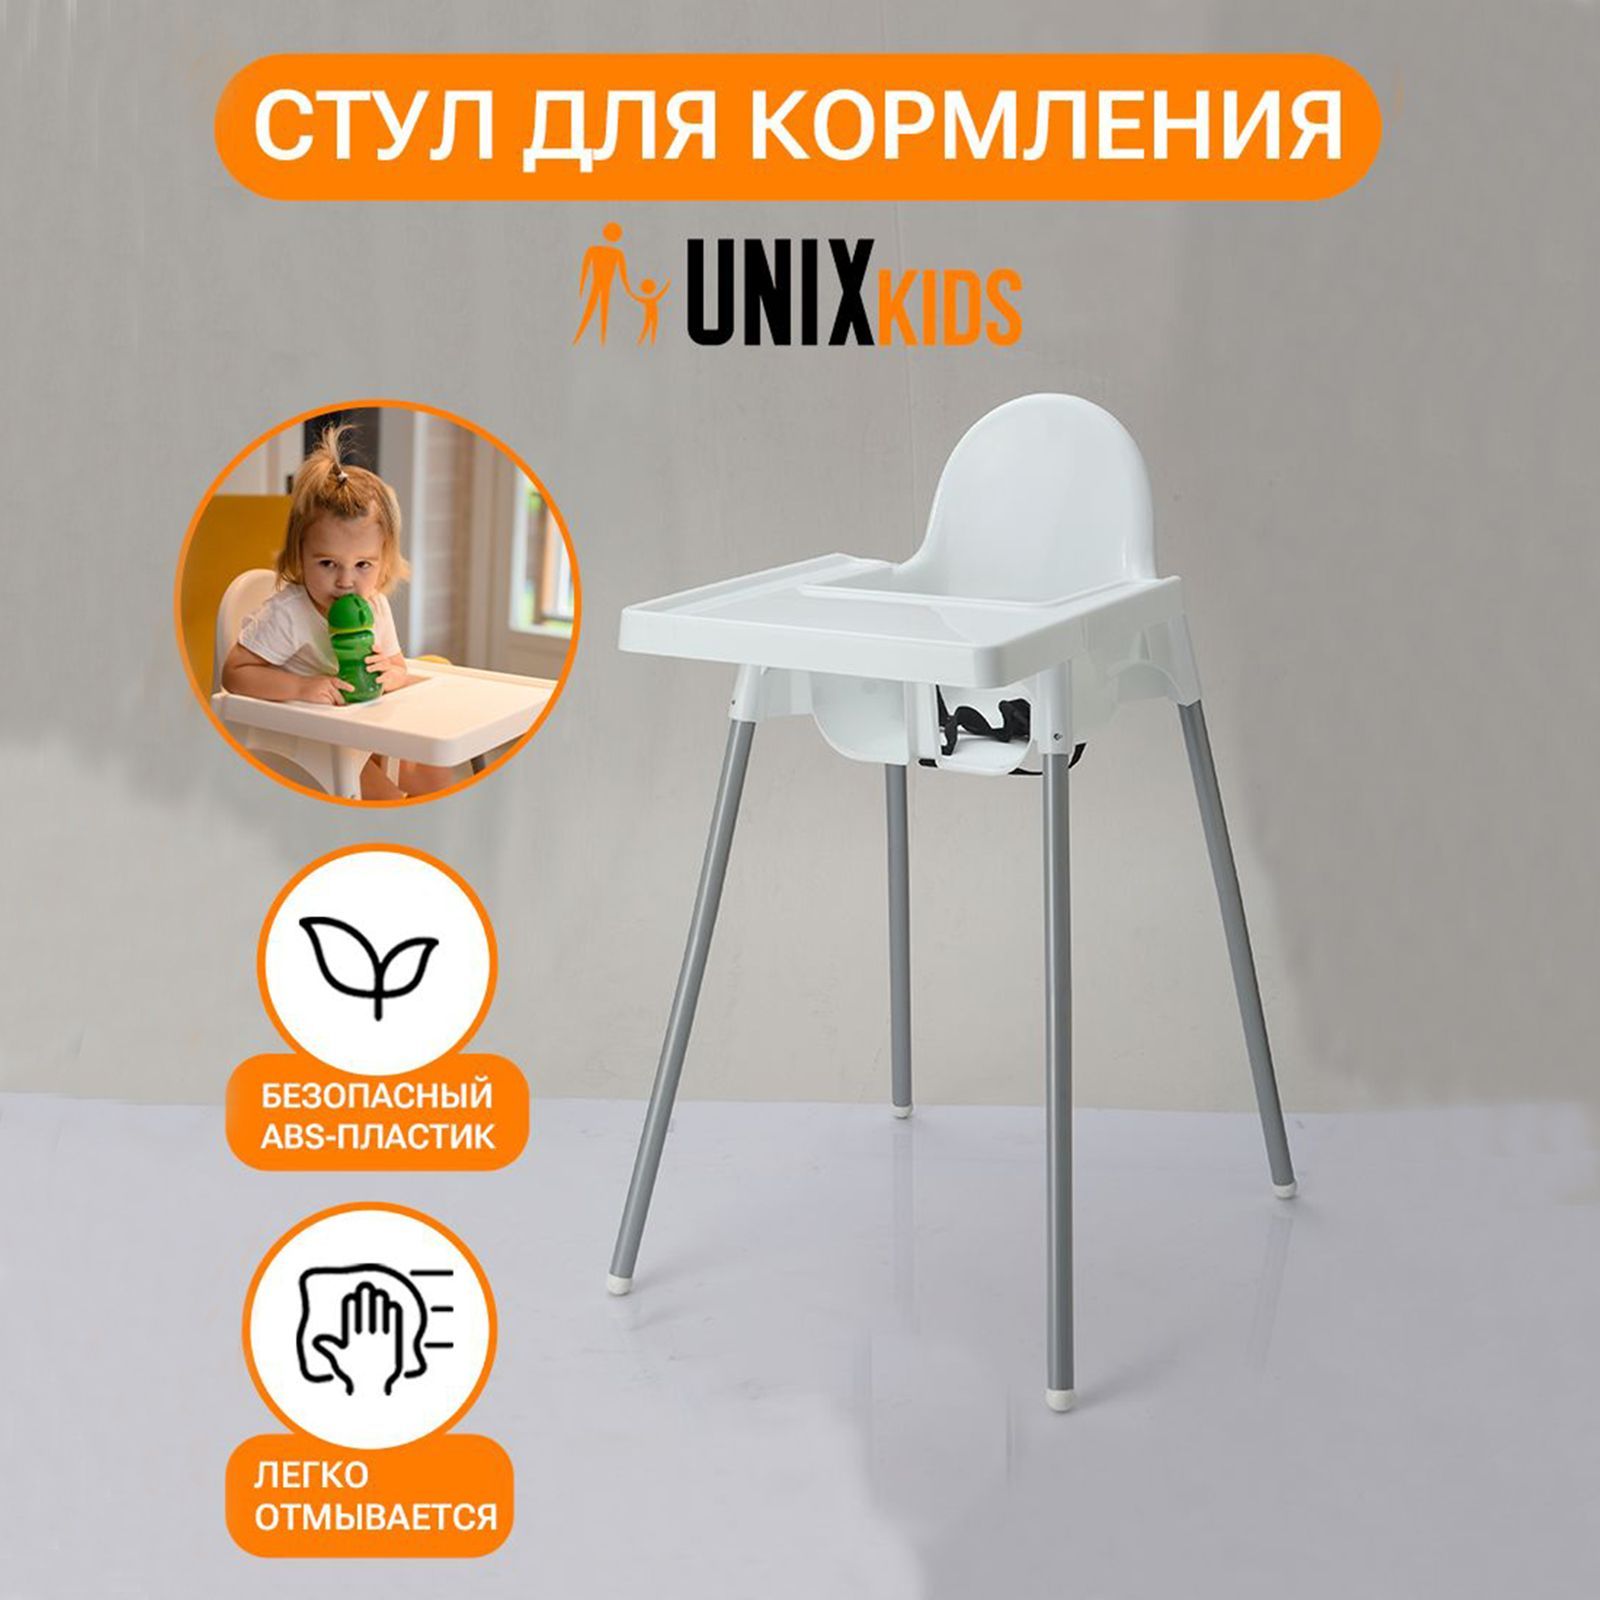 Стульчик для кормления UNIX Kids Fixed White - аналог ИКЕА, со столиком